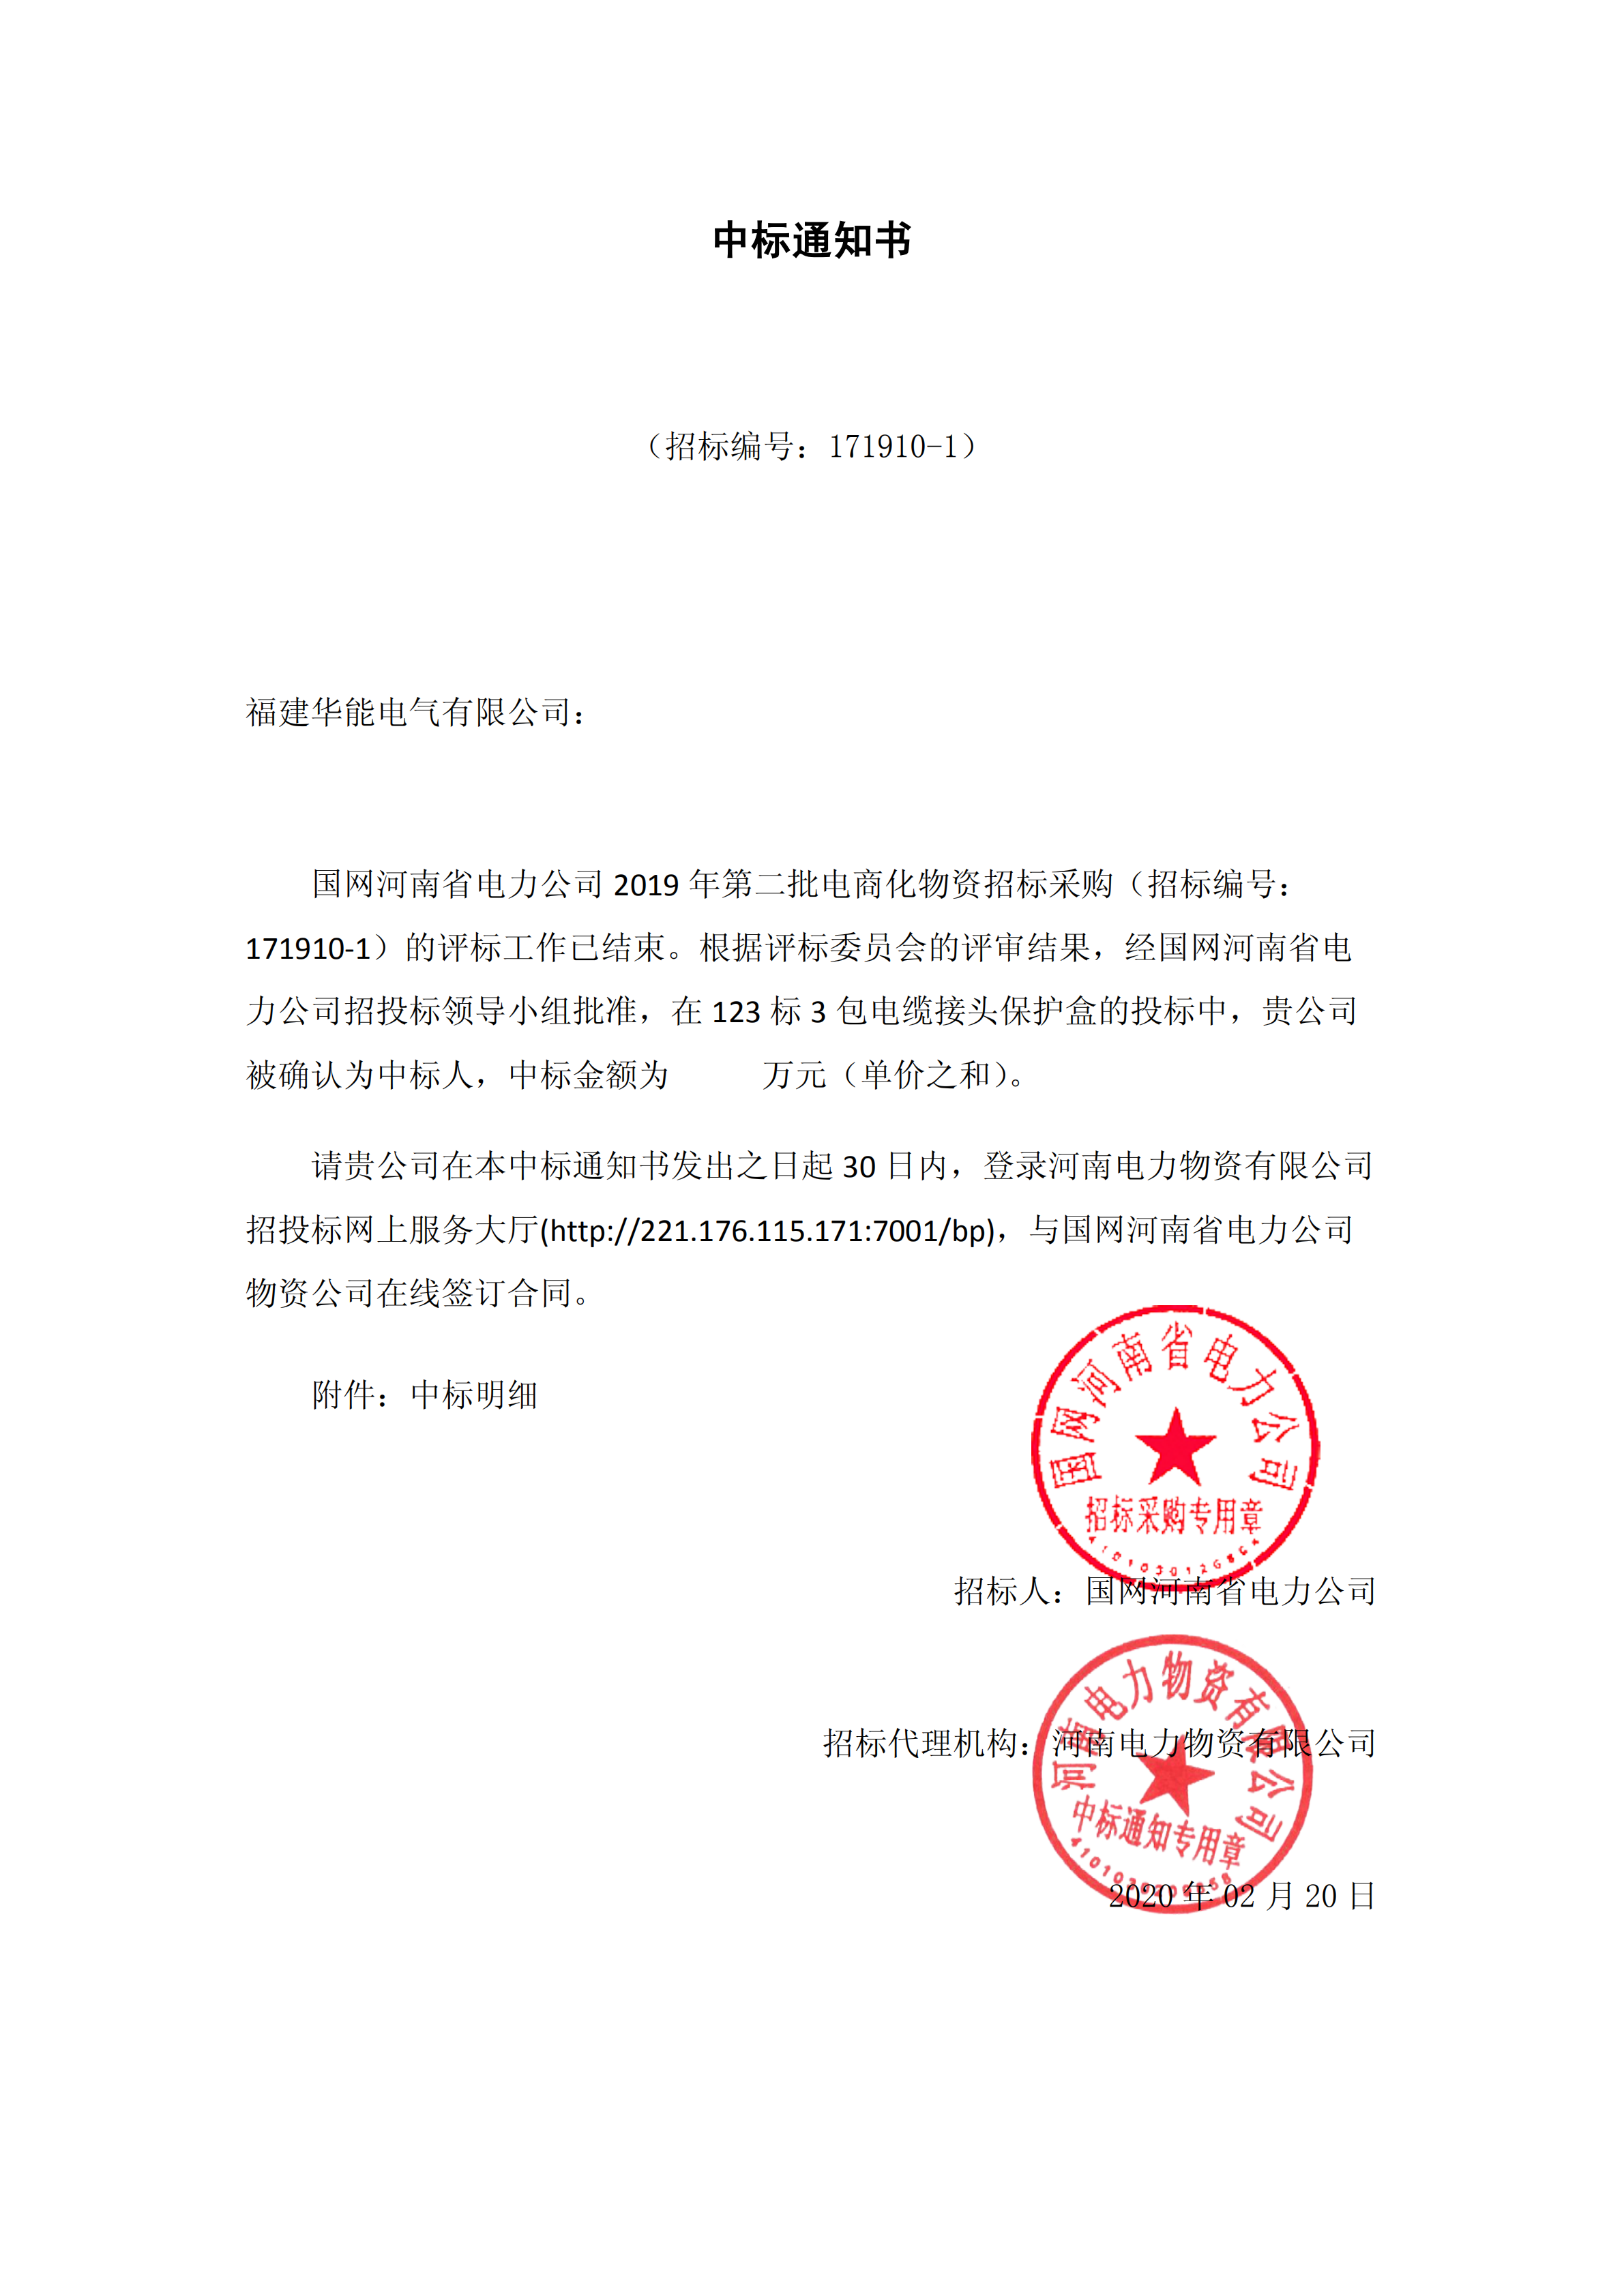 8、国网河南省电力公司2019 年第二批电商化公开竞争性谈判采购_00 拷贝.png